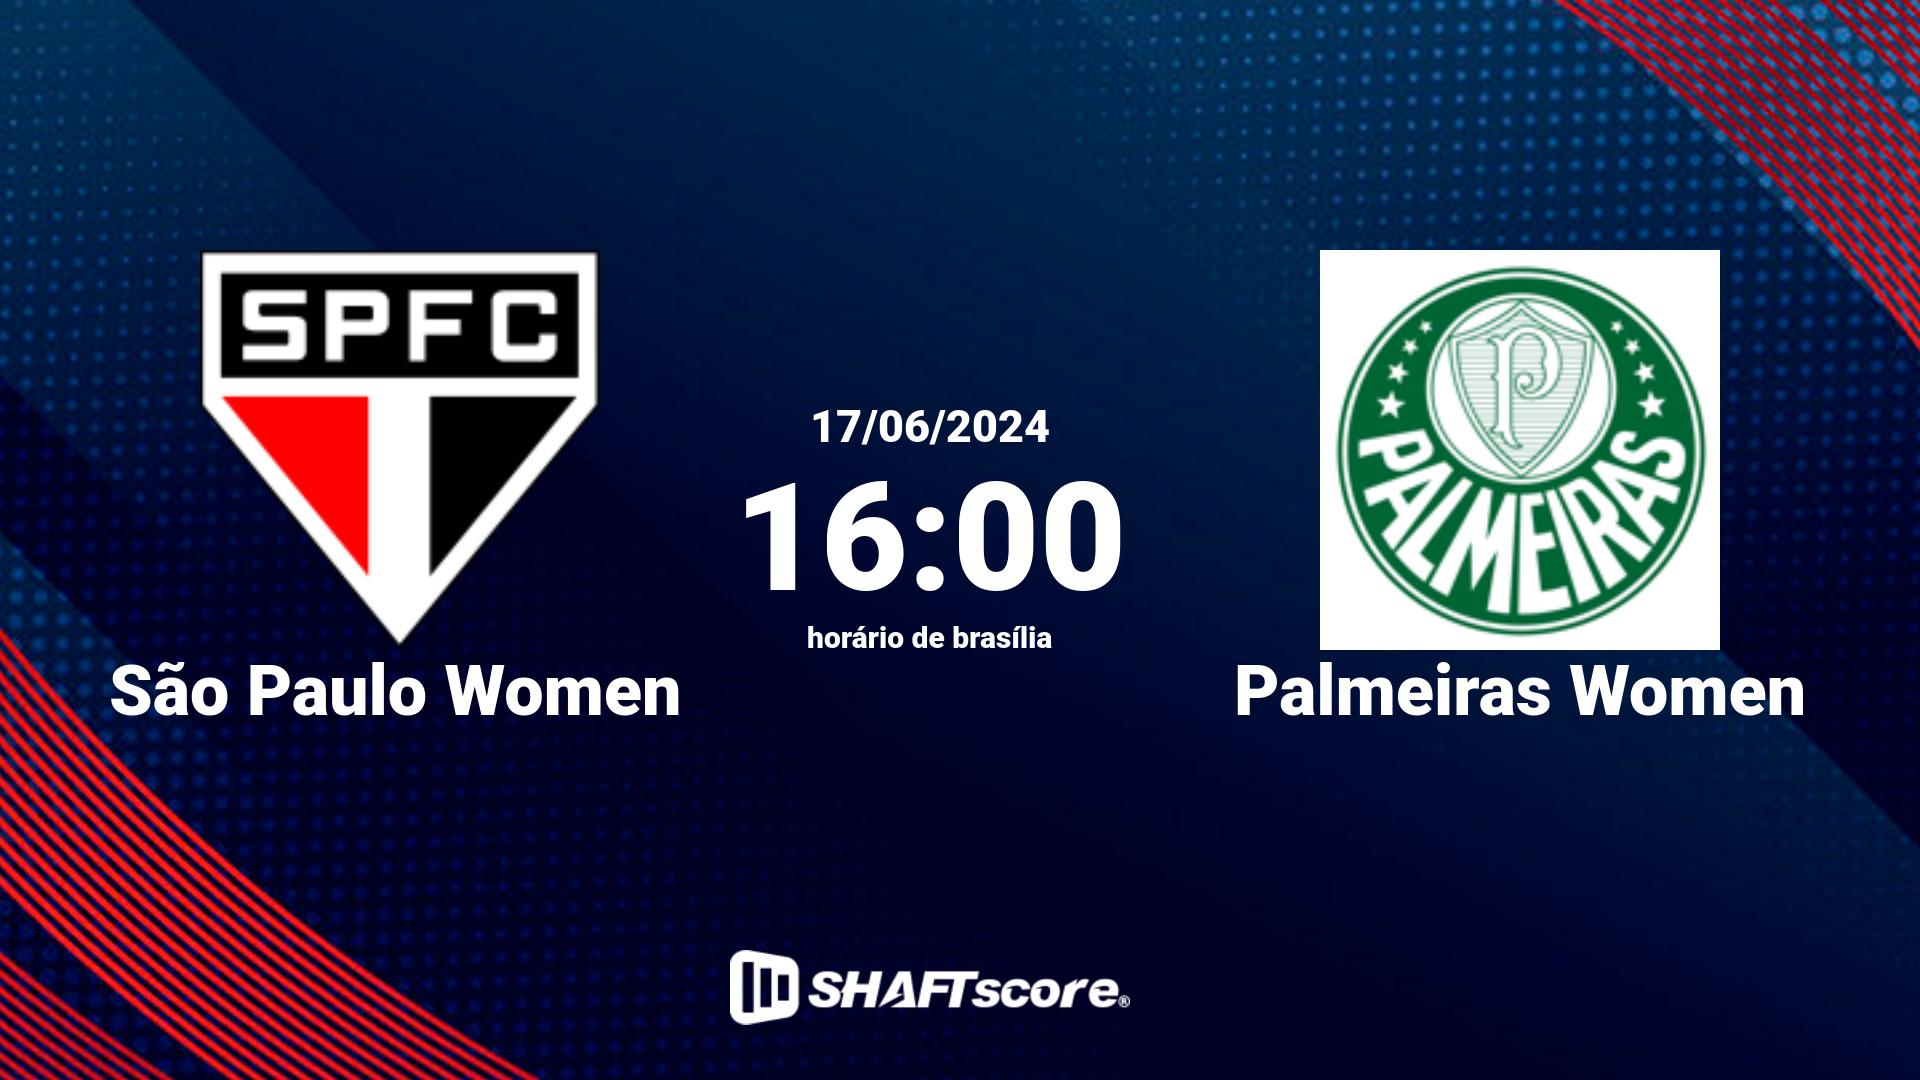 Estatísticas do jogo São Paulo Women vs Palmeiras Women 17.06 16:30